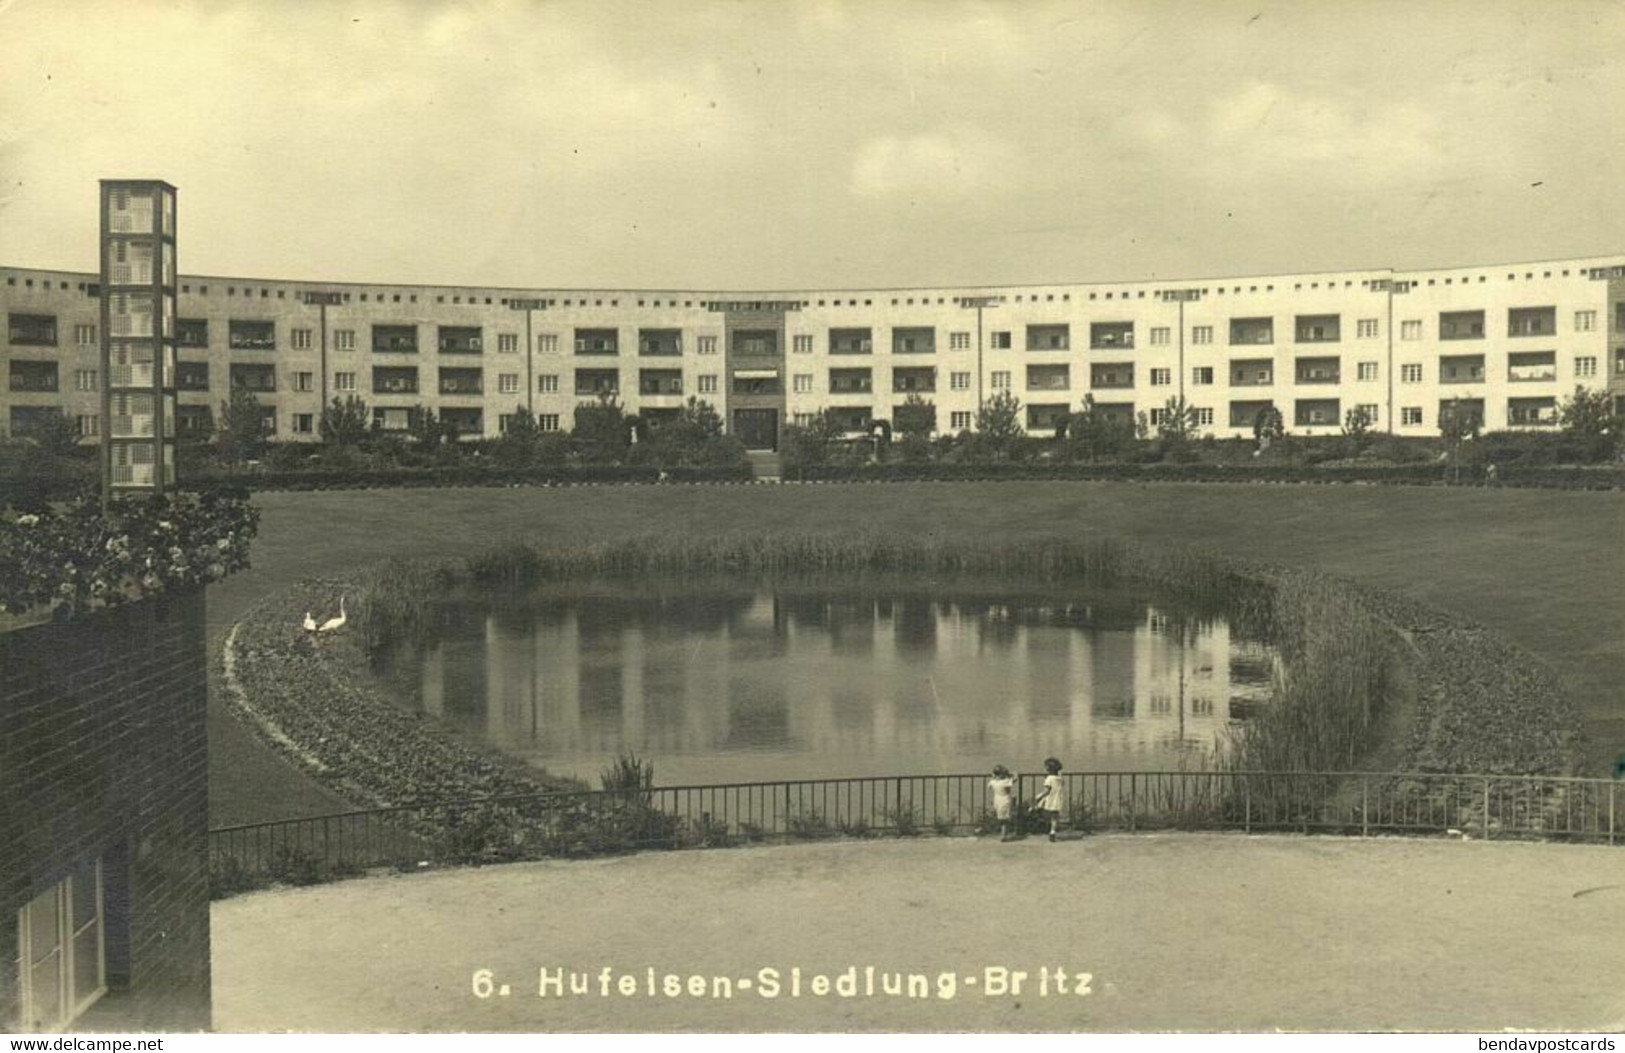 BERLIN BRITZ, Hufeisen-Siedlung, Architect Bruno Taut (1925-33) AK - Neukölln